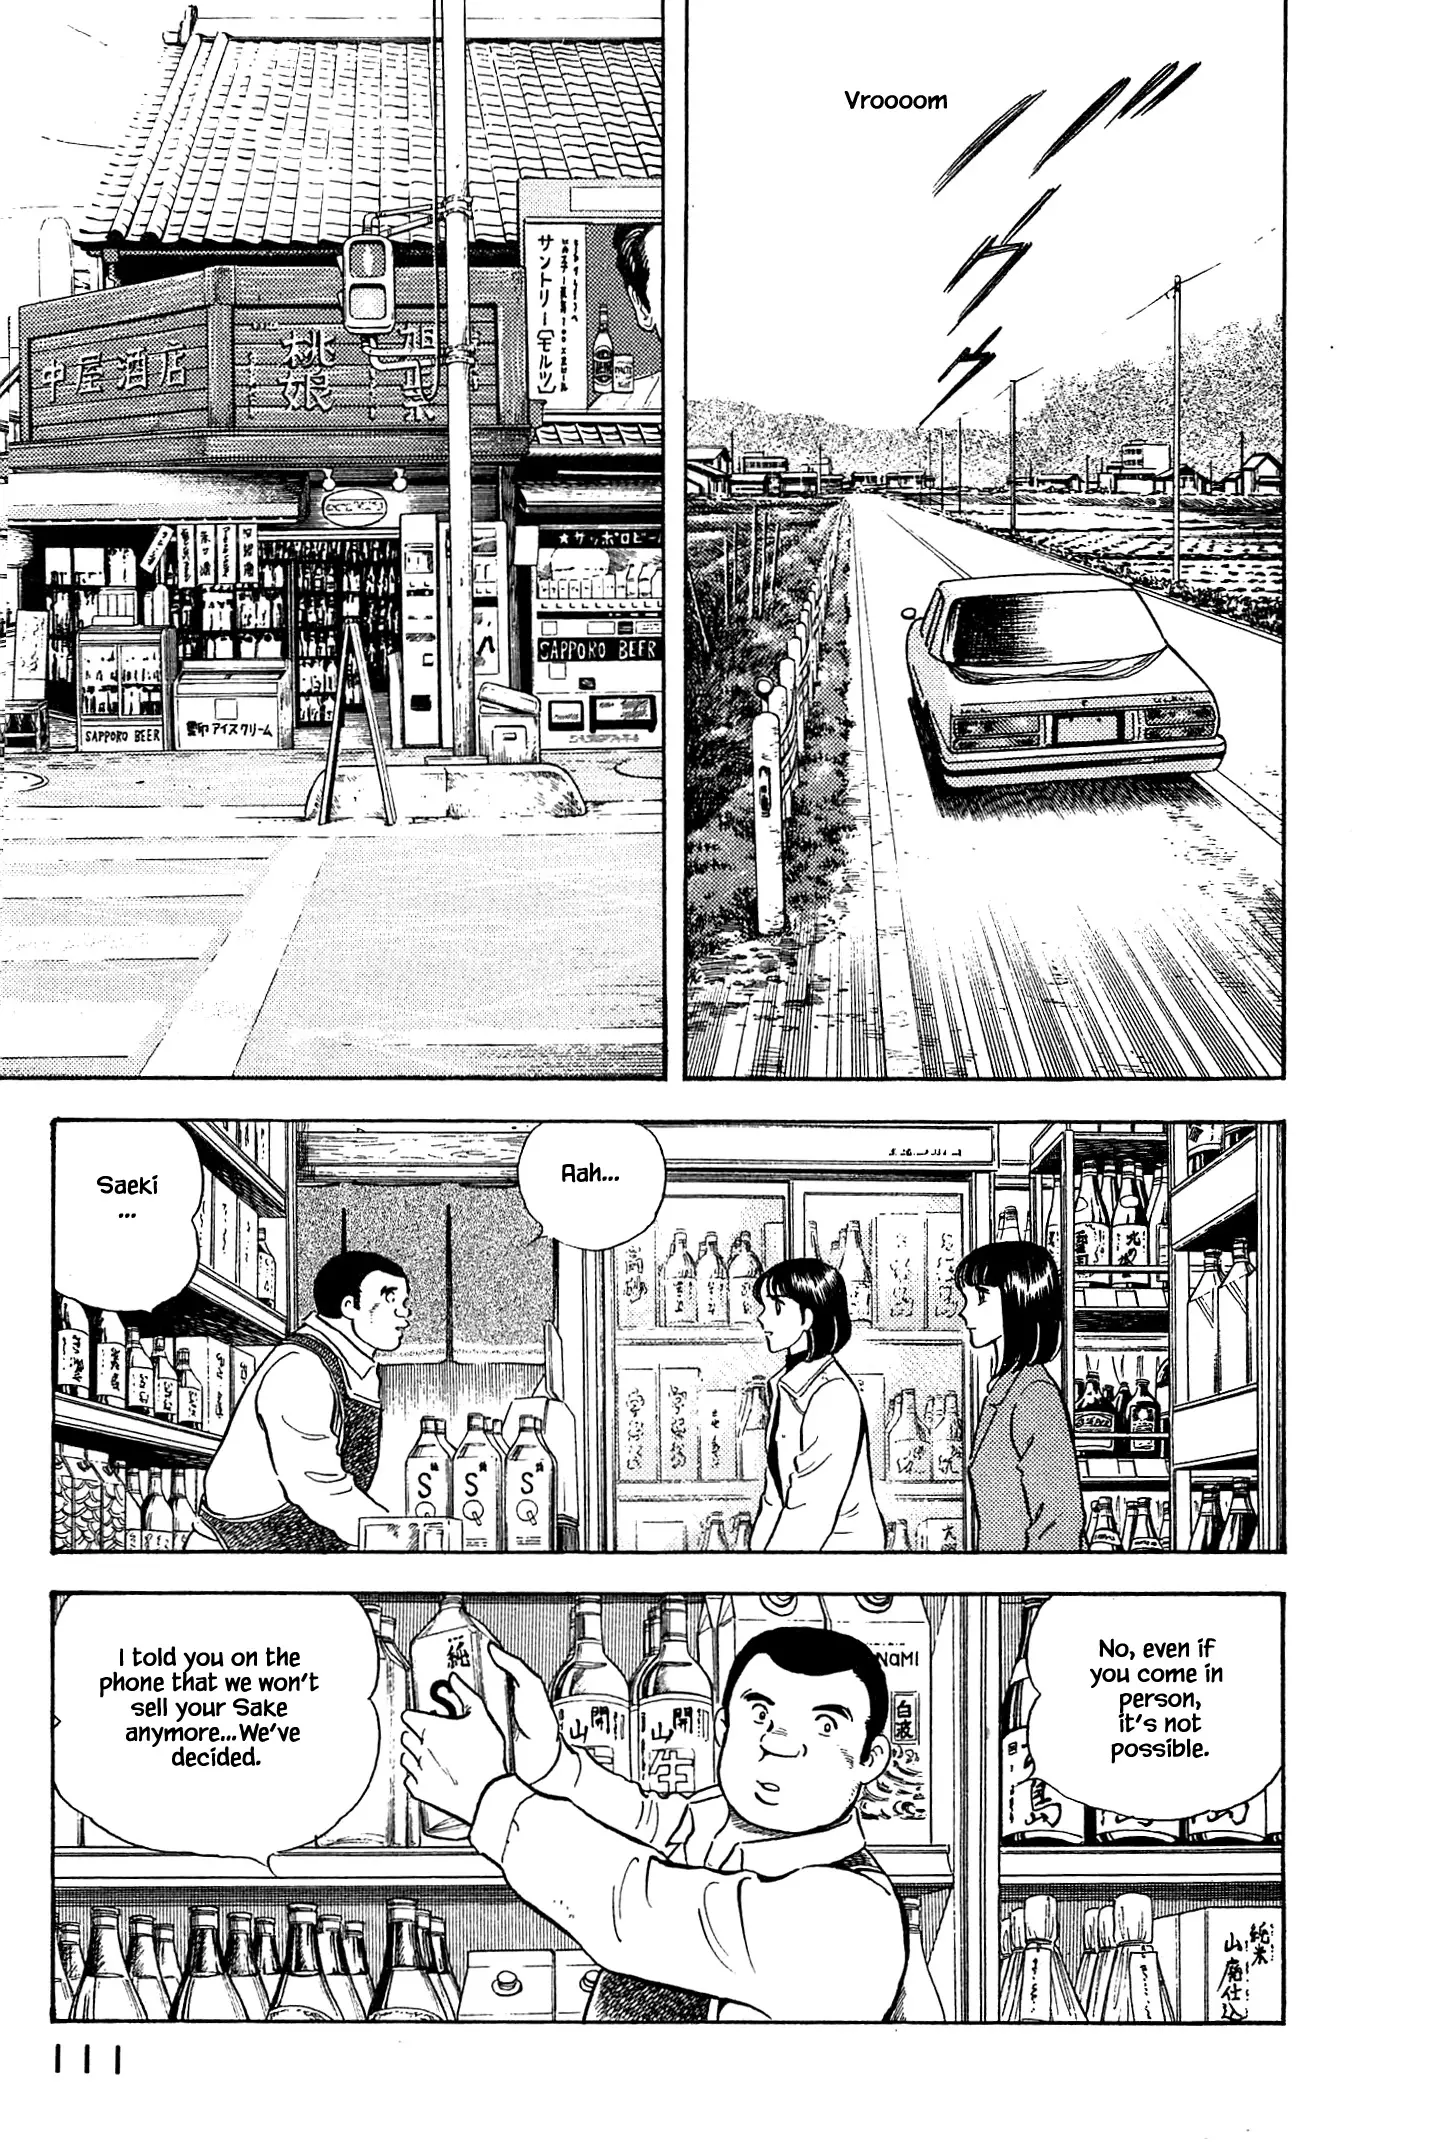 Natsuko's Sake - 49 page 11-f7786ad3